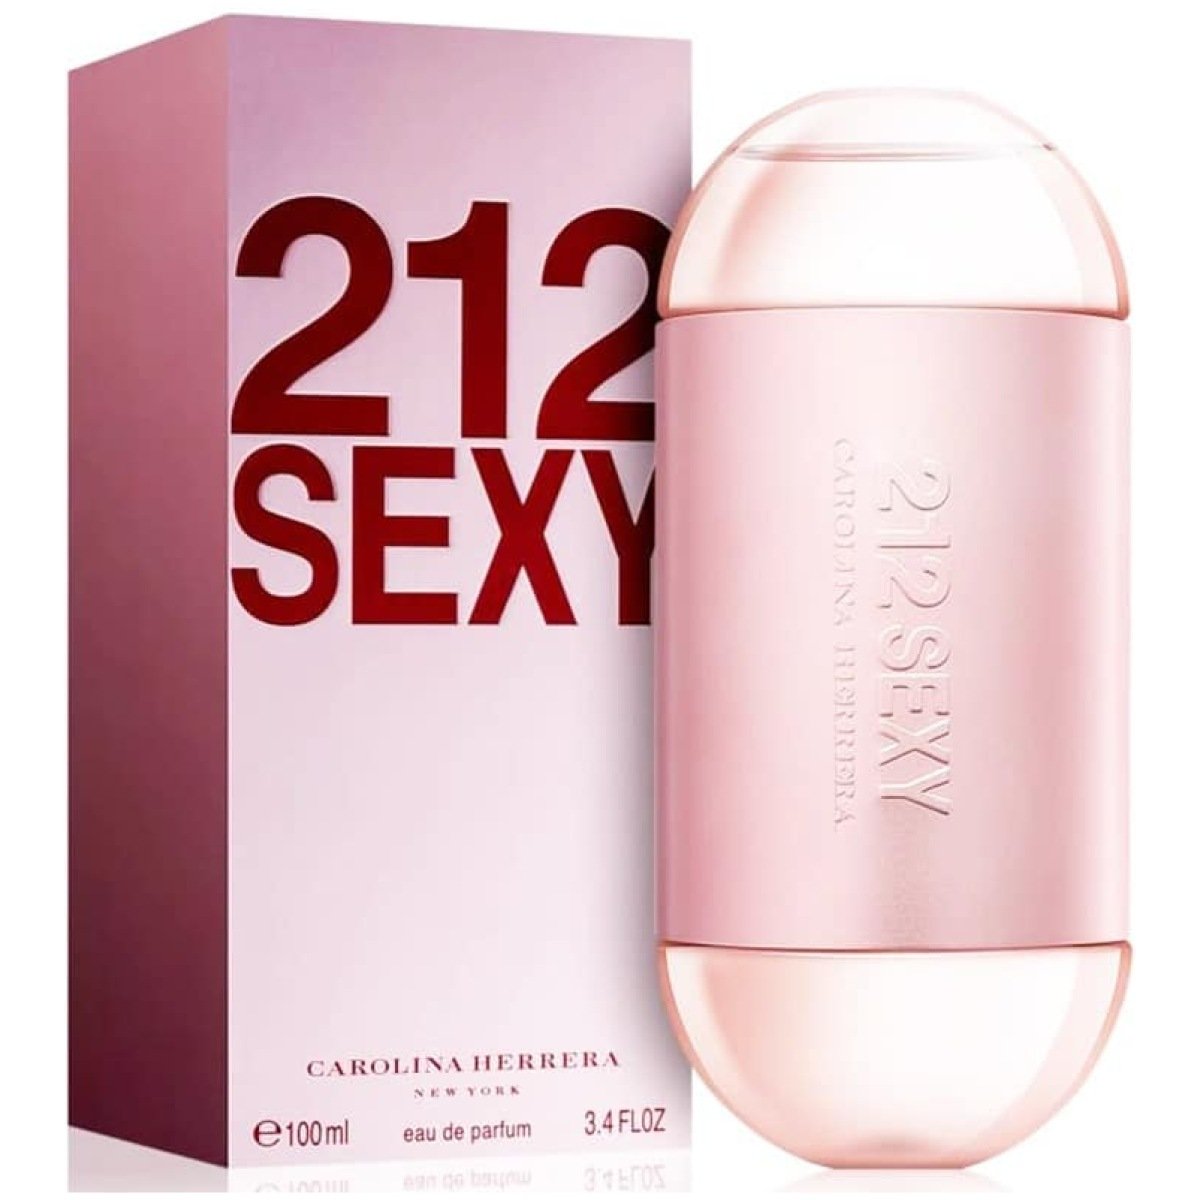 Carolina Herrera 212 Sexy EDP Perfume For Women 100ml